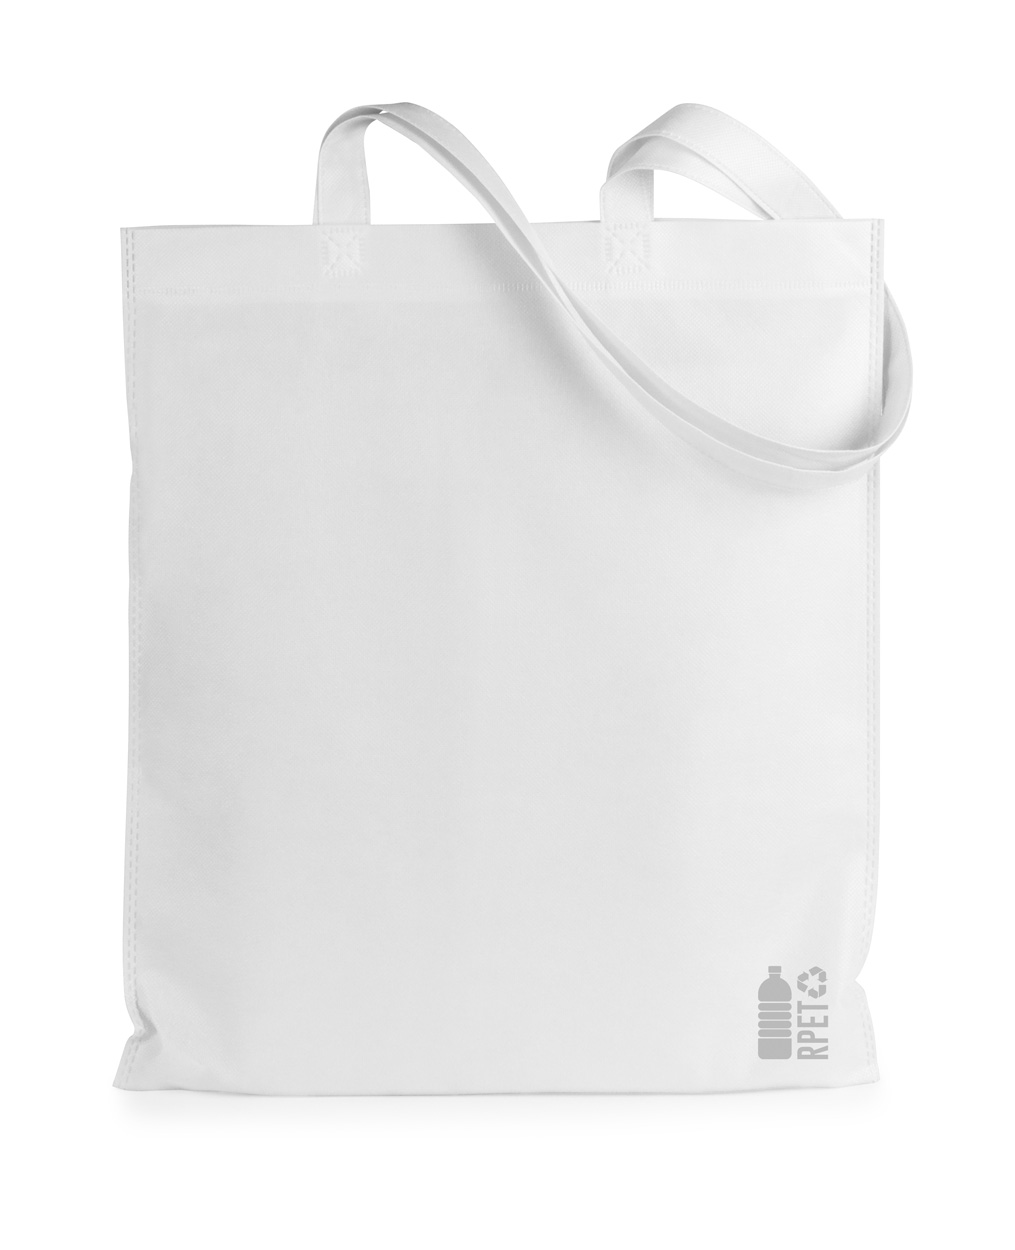 Rezzin RPET nákupní taška - bílá